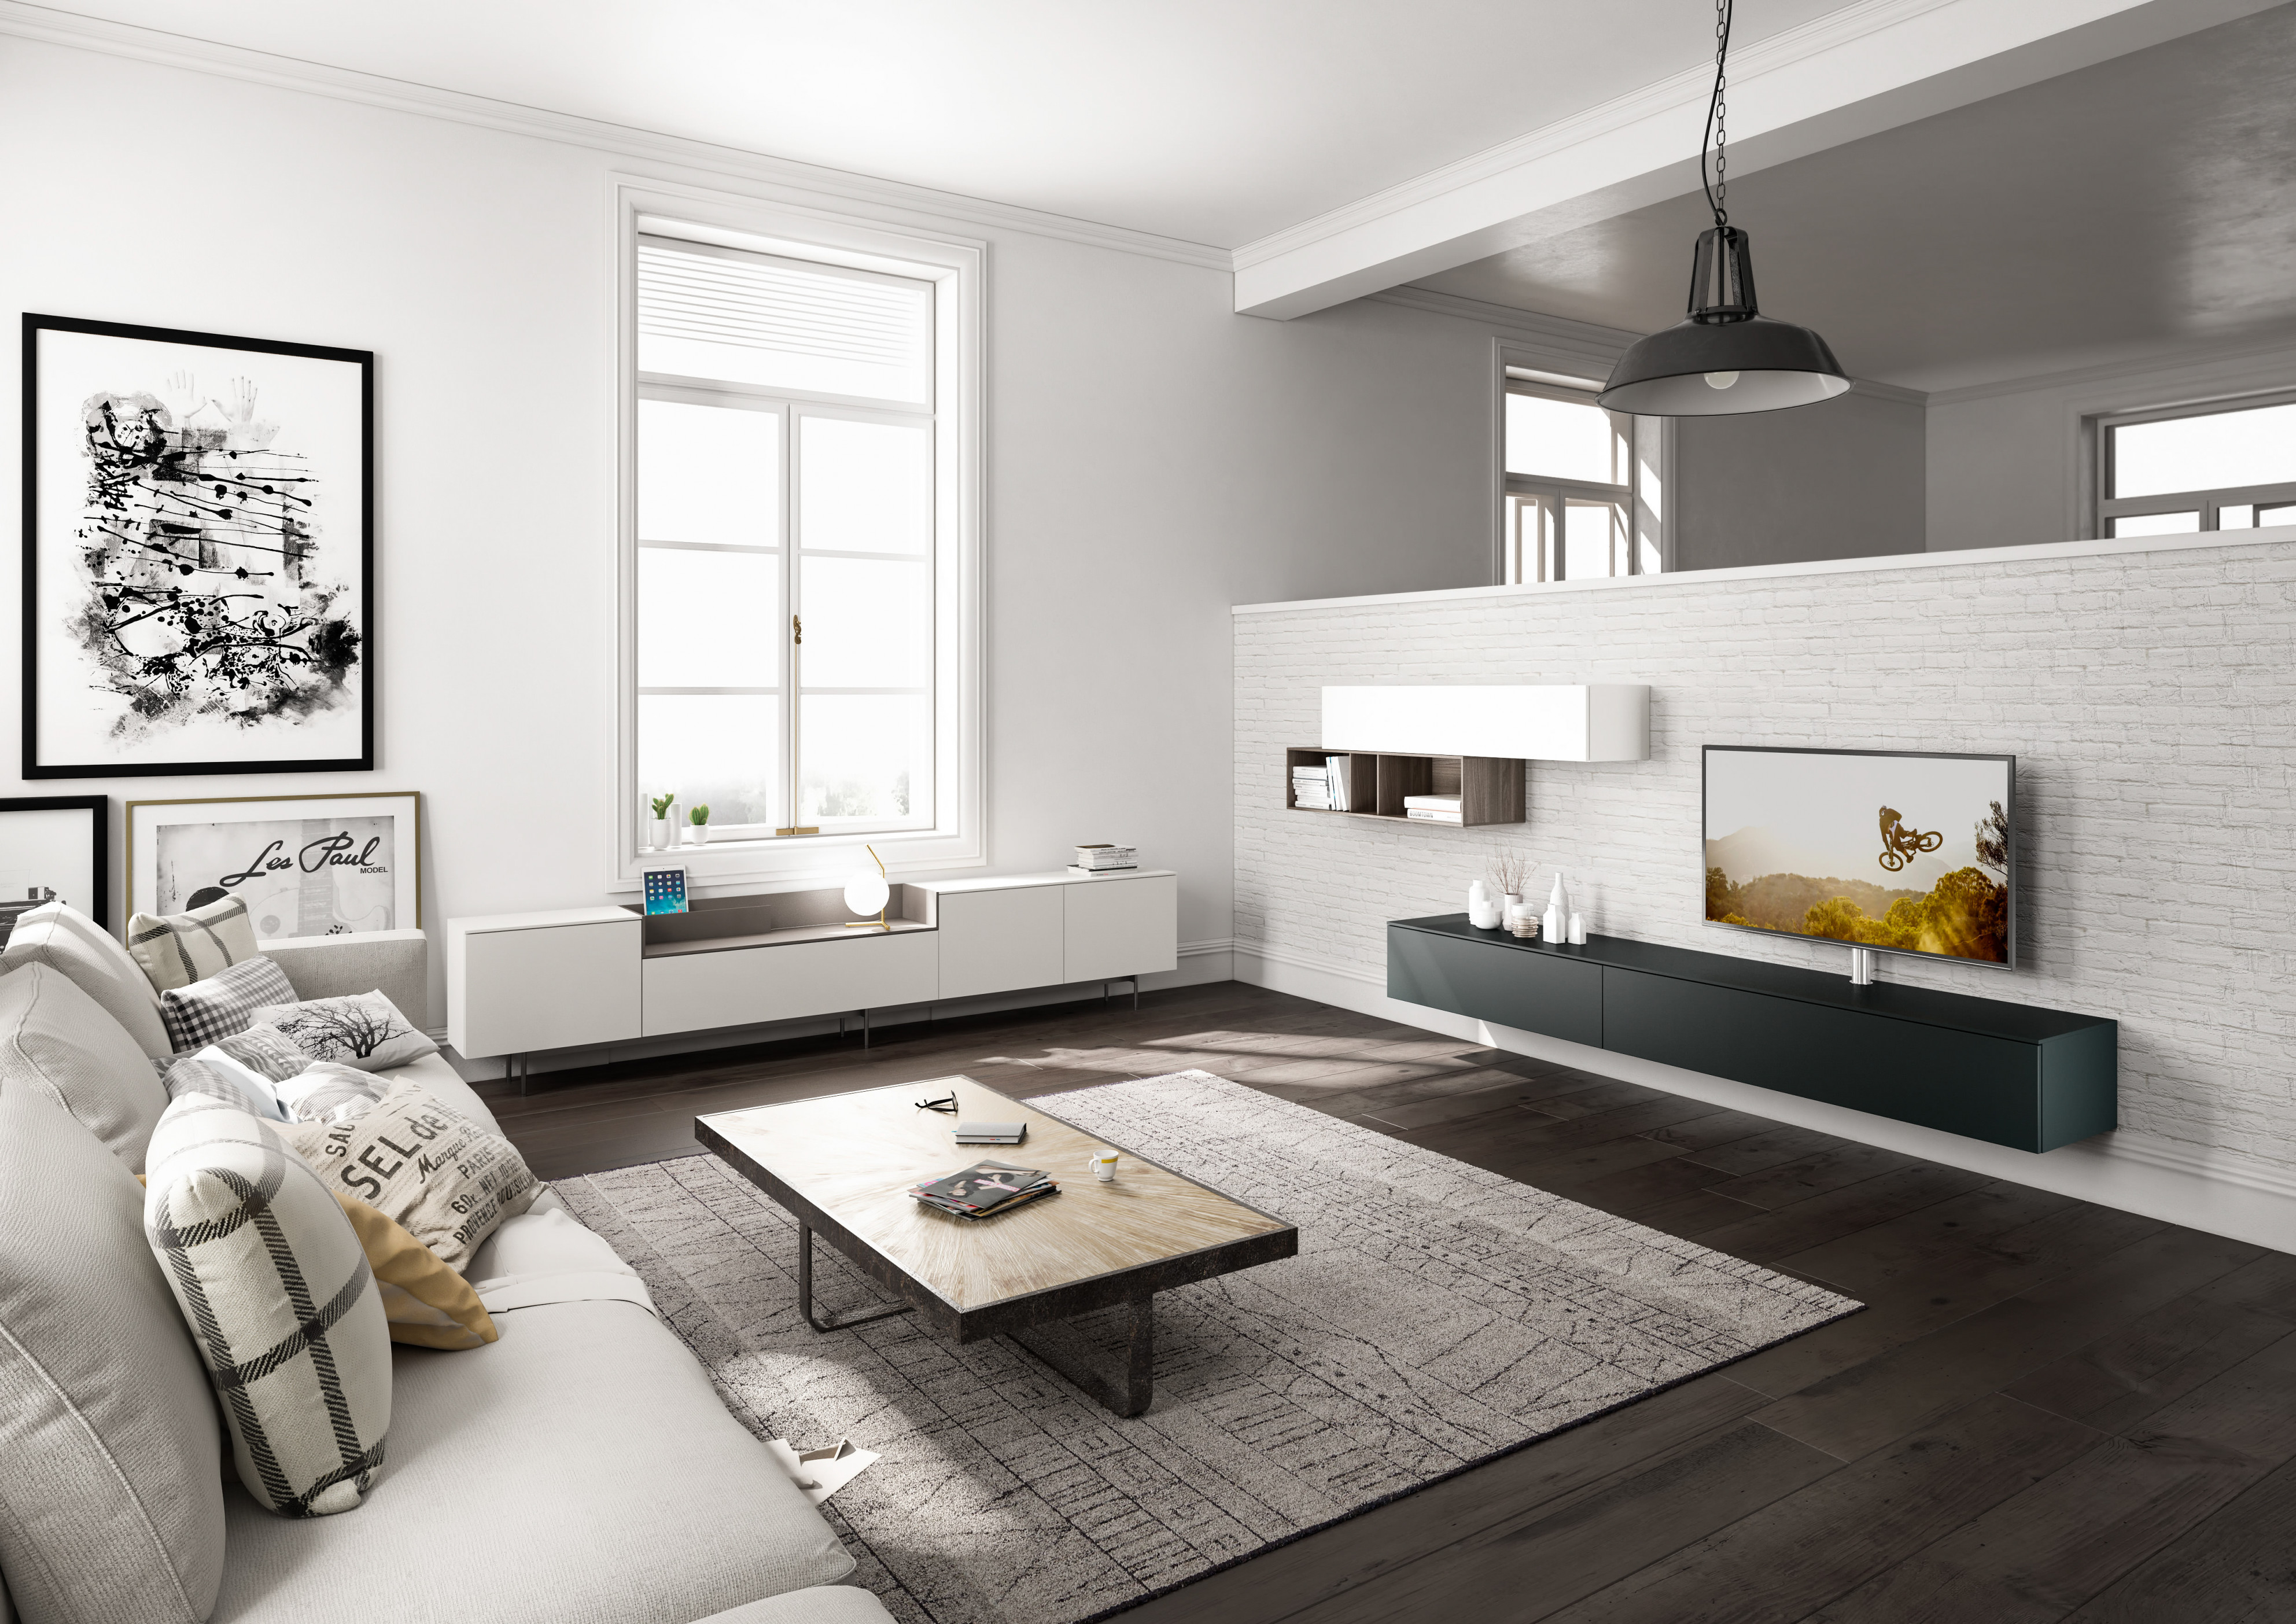 Wohnzimmergestaltung – Die Besten Ideen Tipps  Wohnbeispiele von Ideen Einrichtung Wohnzimmer Photo